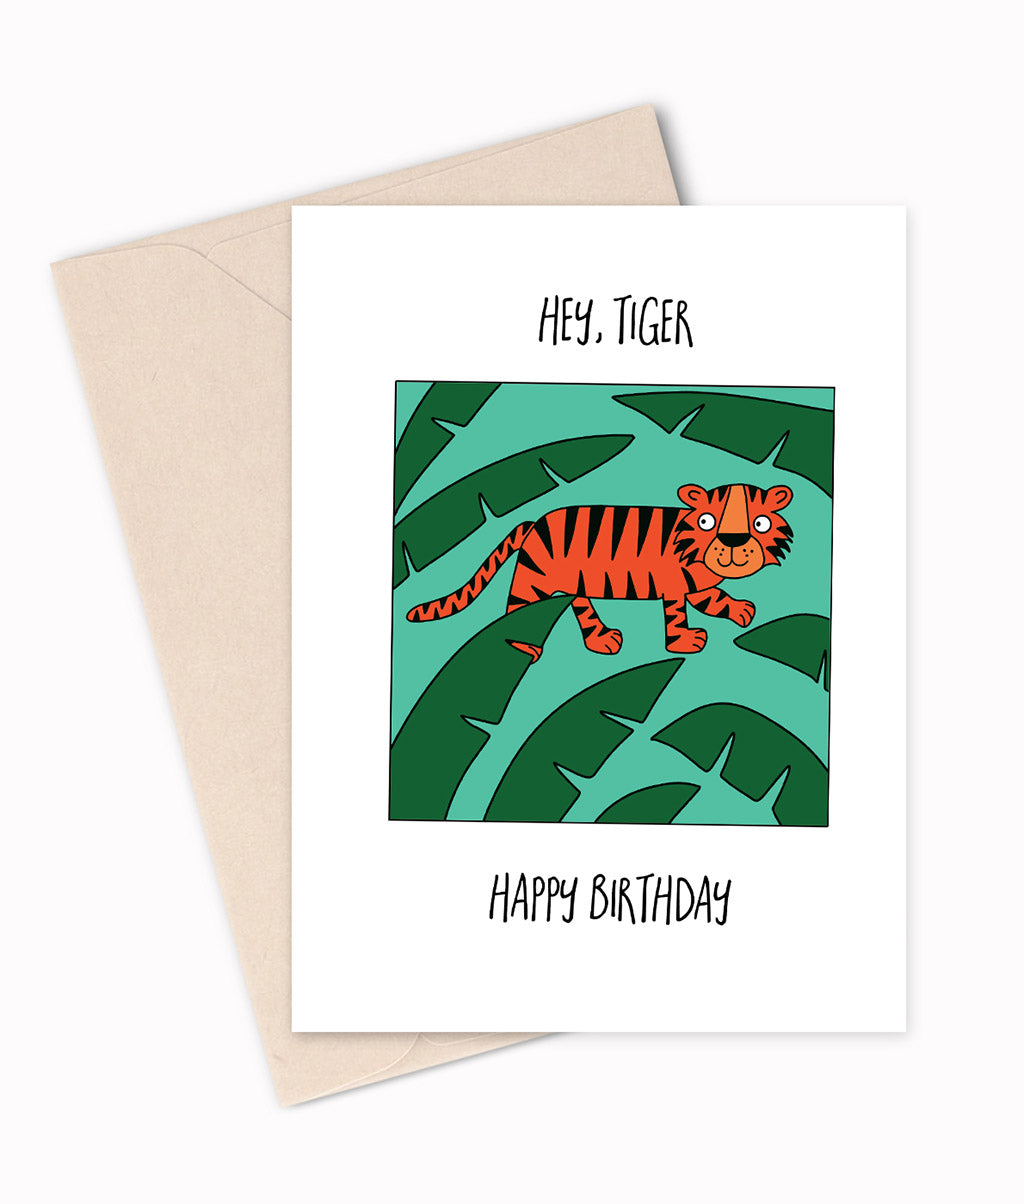 Hey, Tiger - Birthday Card